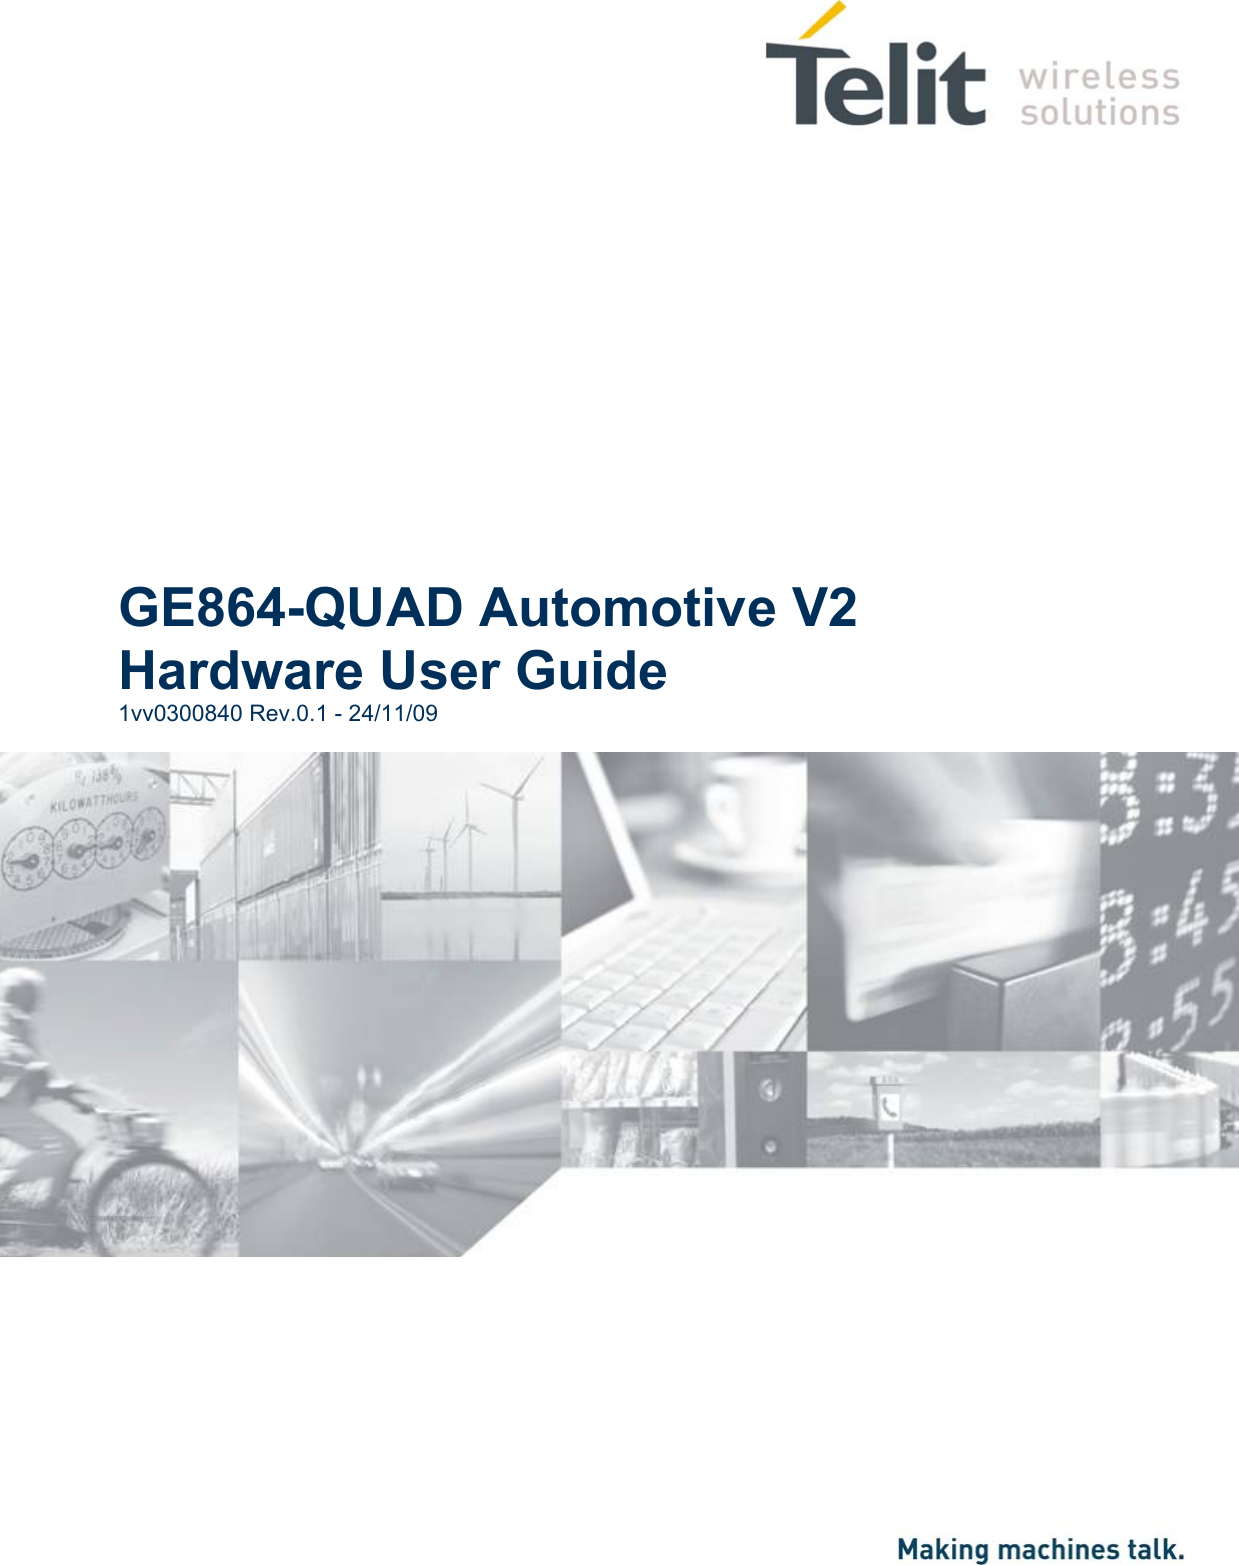           GE864-QUAD Automotive V2 Hardware User Guide 1vv0300840 Rev.0.1 - 24/11/09                         